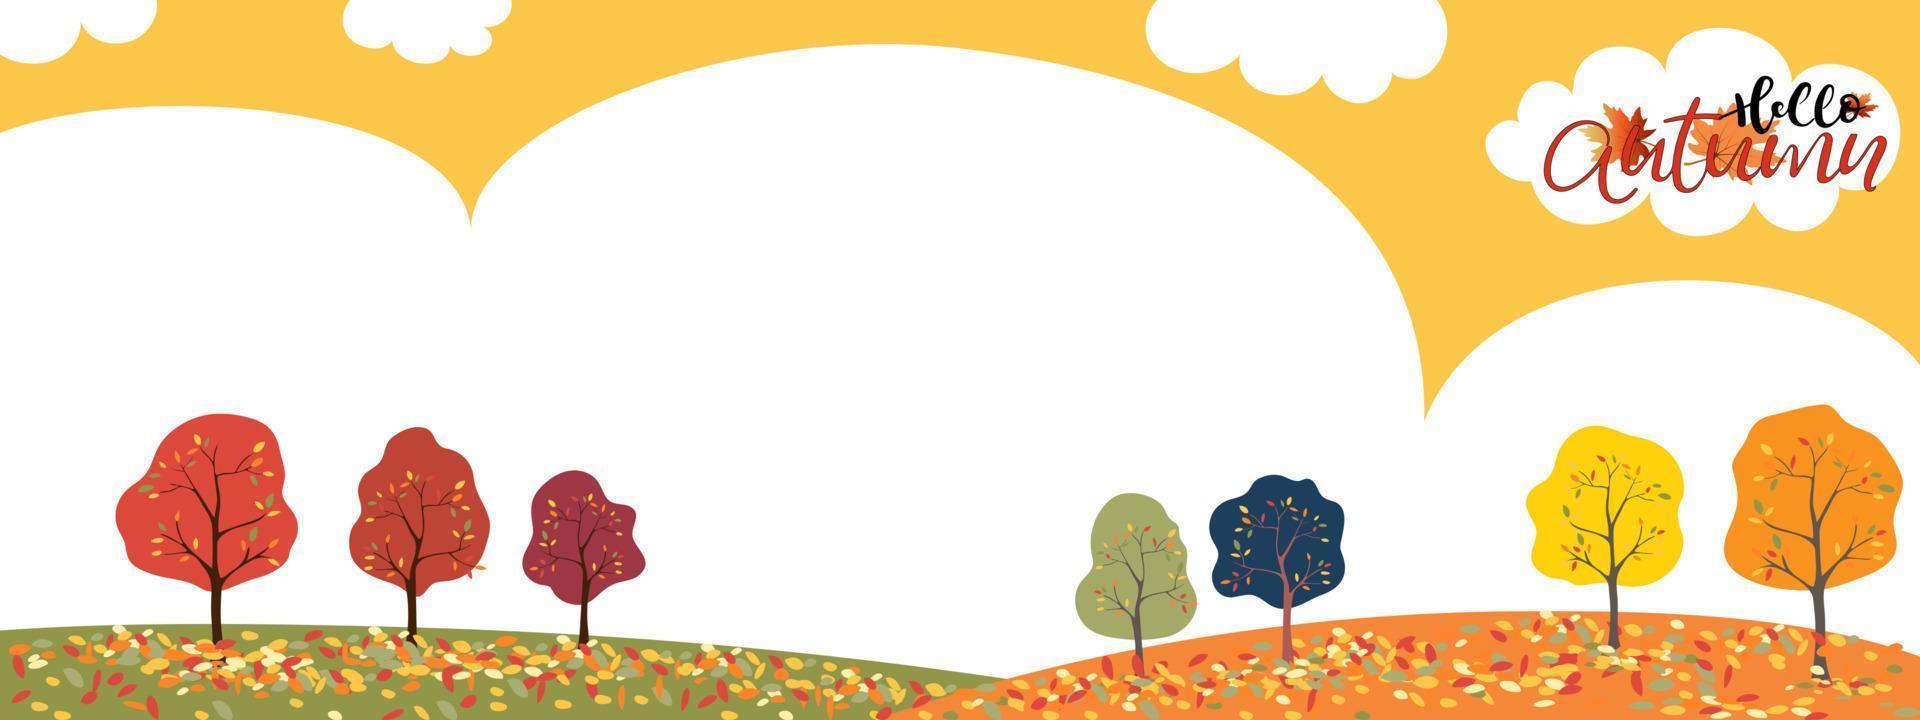 conjunto de banner de fondo de temporada de otoño de árbol con hojas multicolores cayendo sobre el suelo, banner de fondo de ilustración vecyor hola otoño con árboles de bosque coloridos sobre fondo amarillo vector